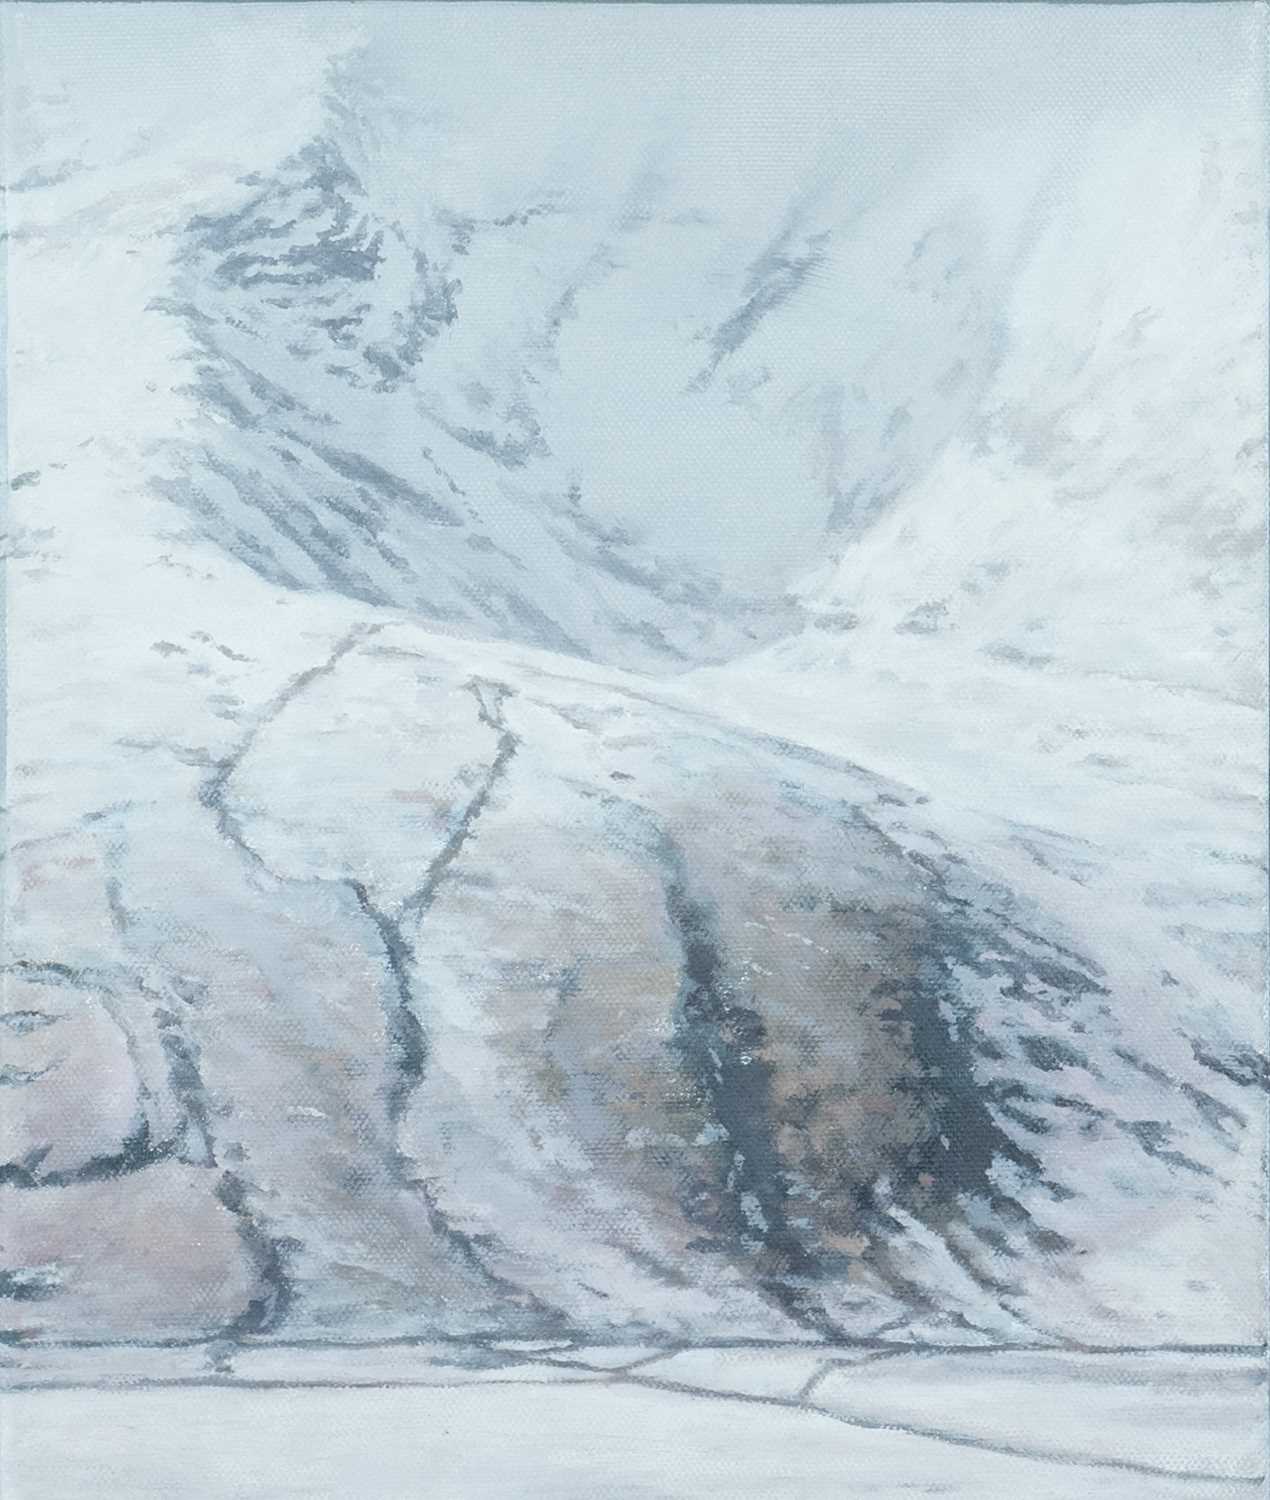 ‡ DANIEL CRAWSHAW (b.1967) oil on canvas - entitled verso, 'Nant Ffrancon 1' on Martin Tinney